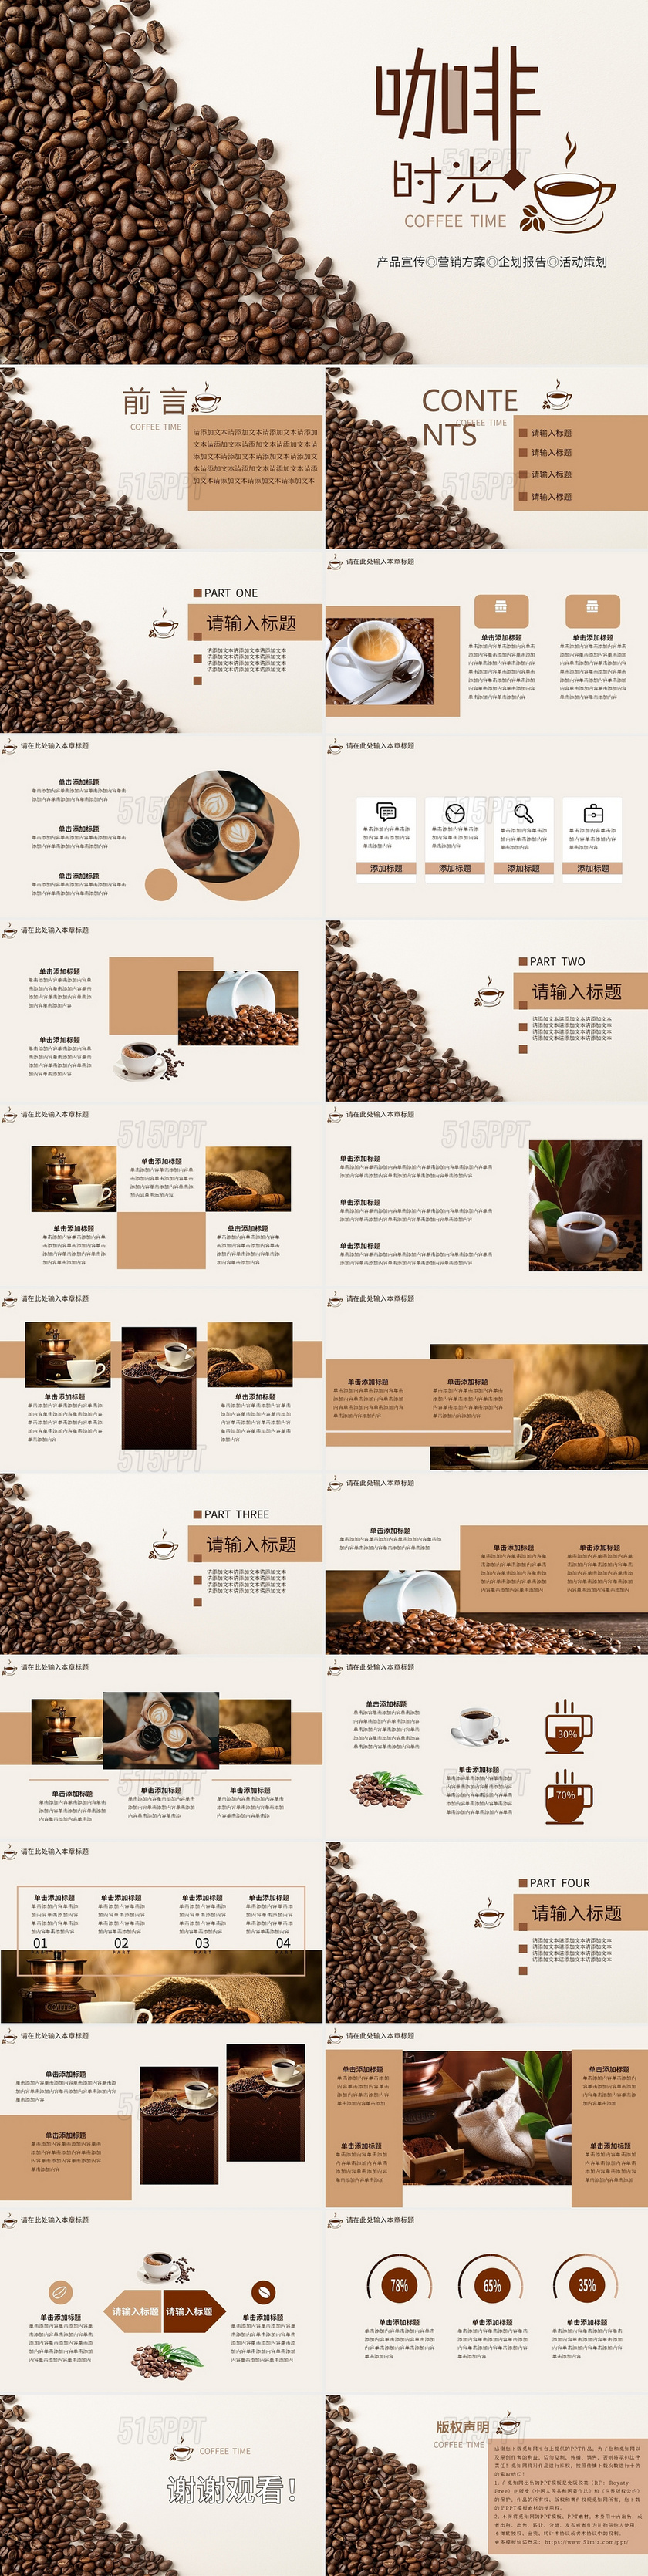 棕色咖啡时光产品宣传营销方案企划报告活动策划PPT模板